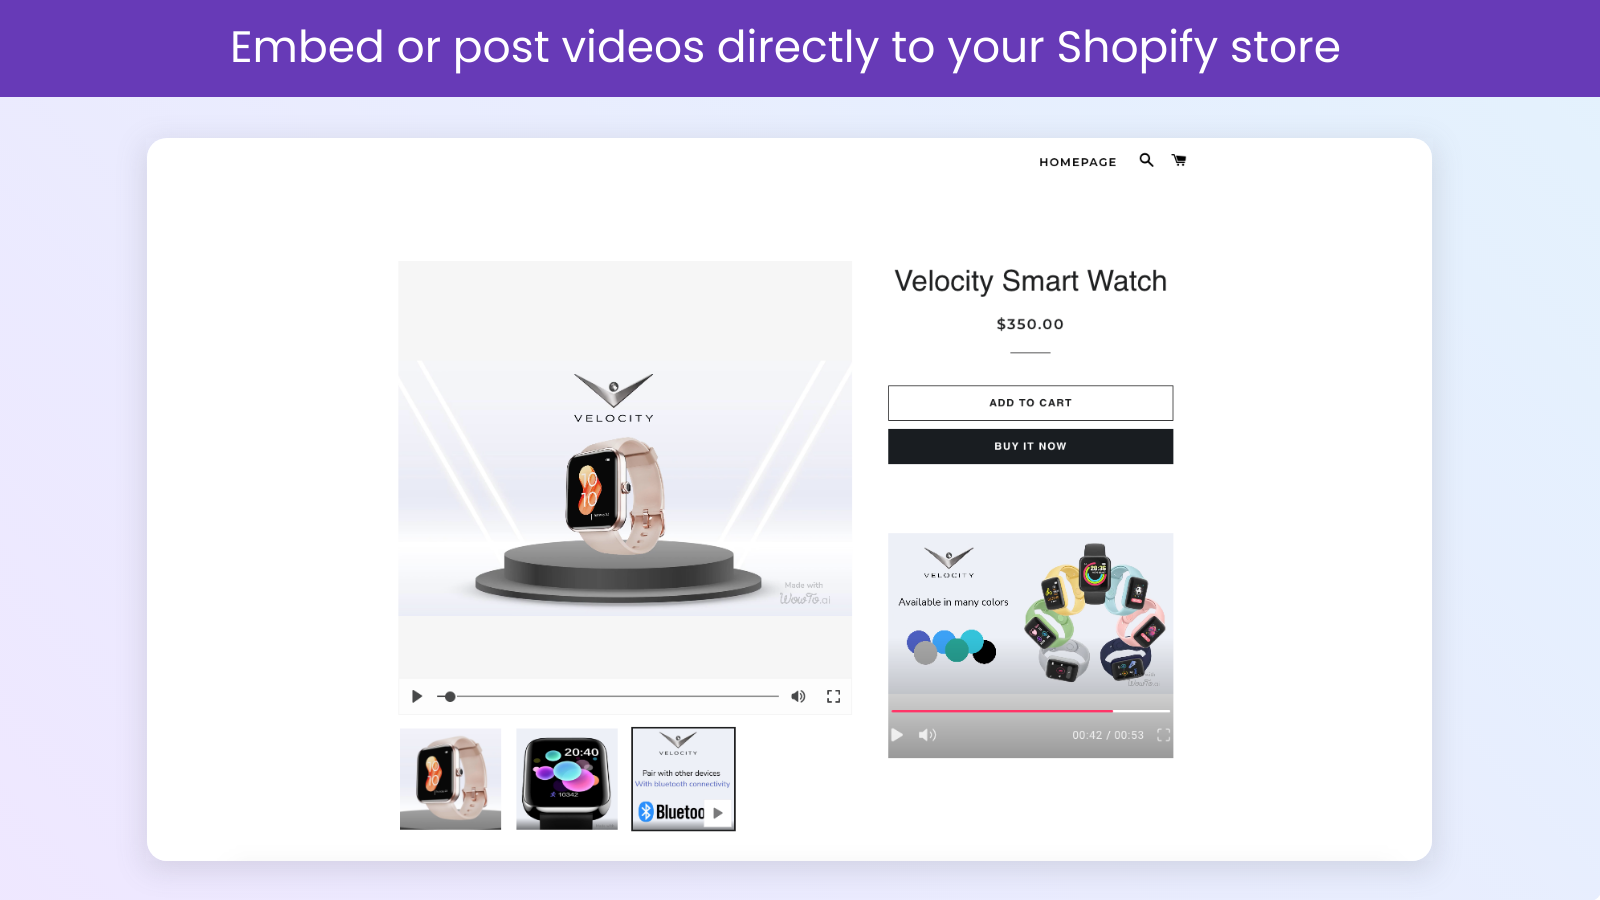 Posta videor till din Shopify-butik från WowTo